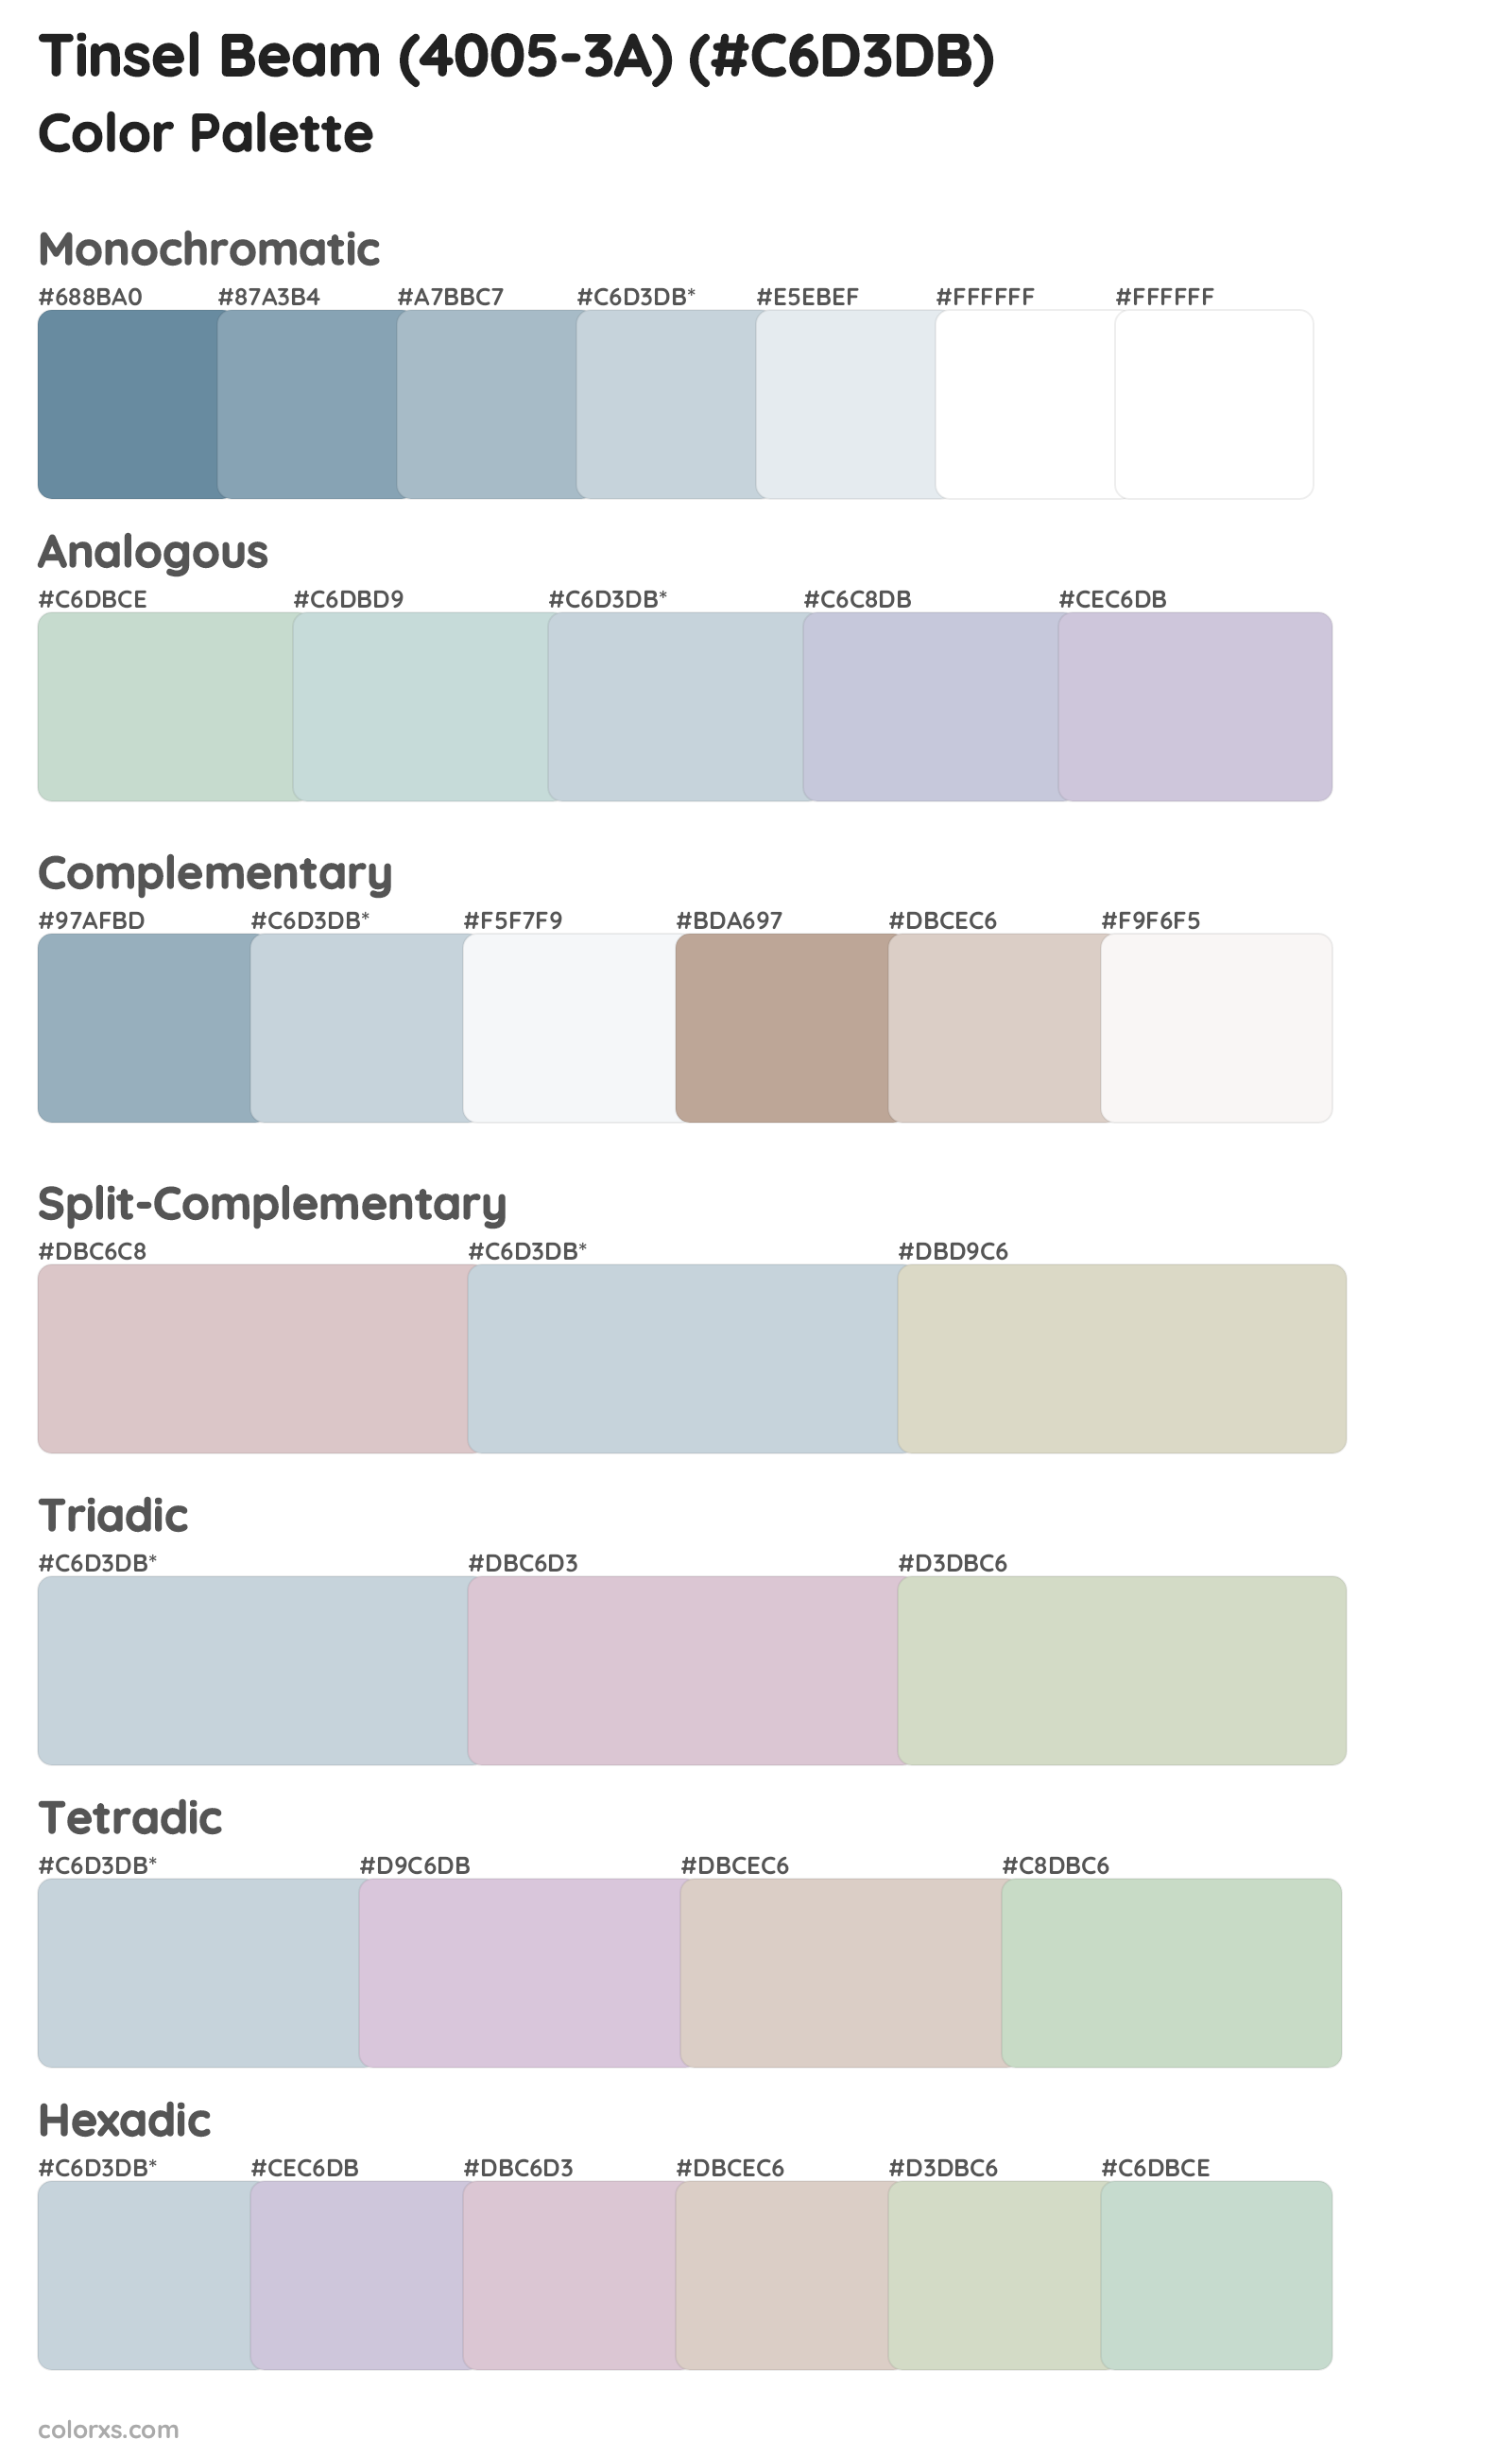 Tinsel Beam (4005-3A) Color Scheme Palettes